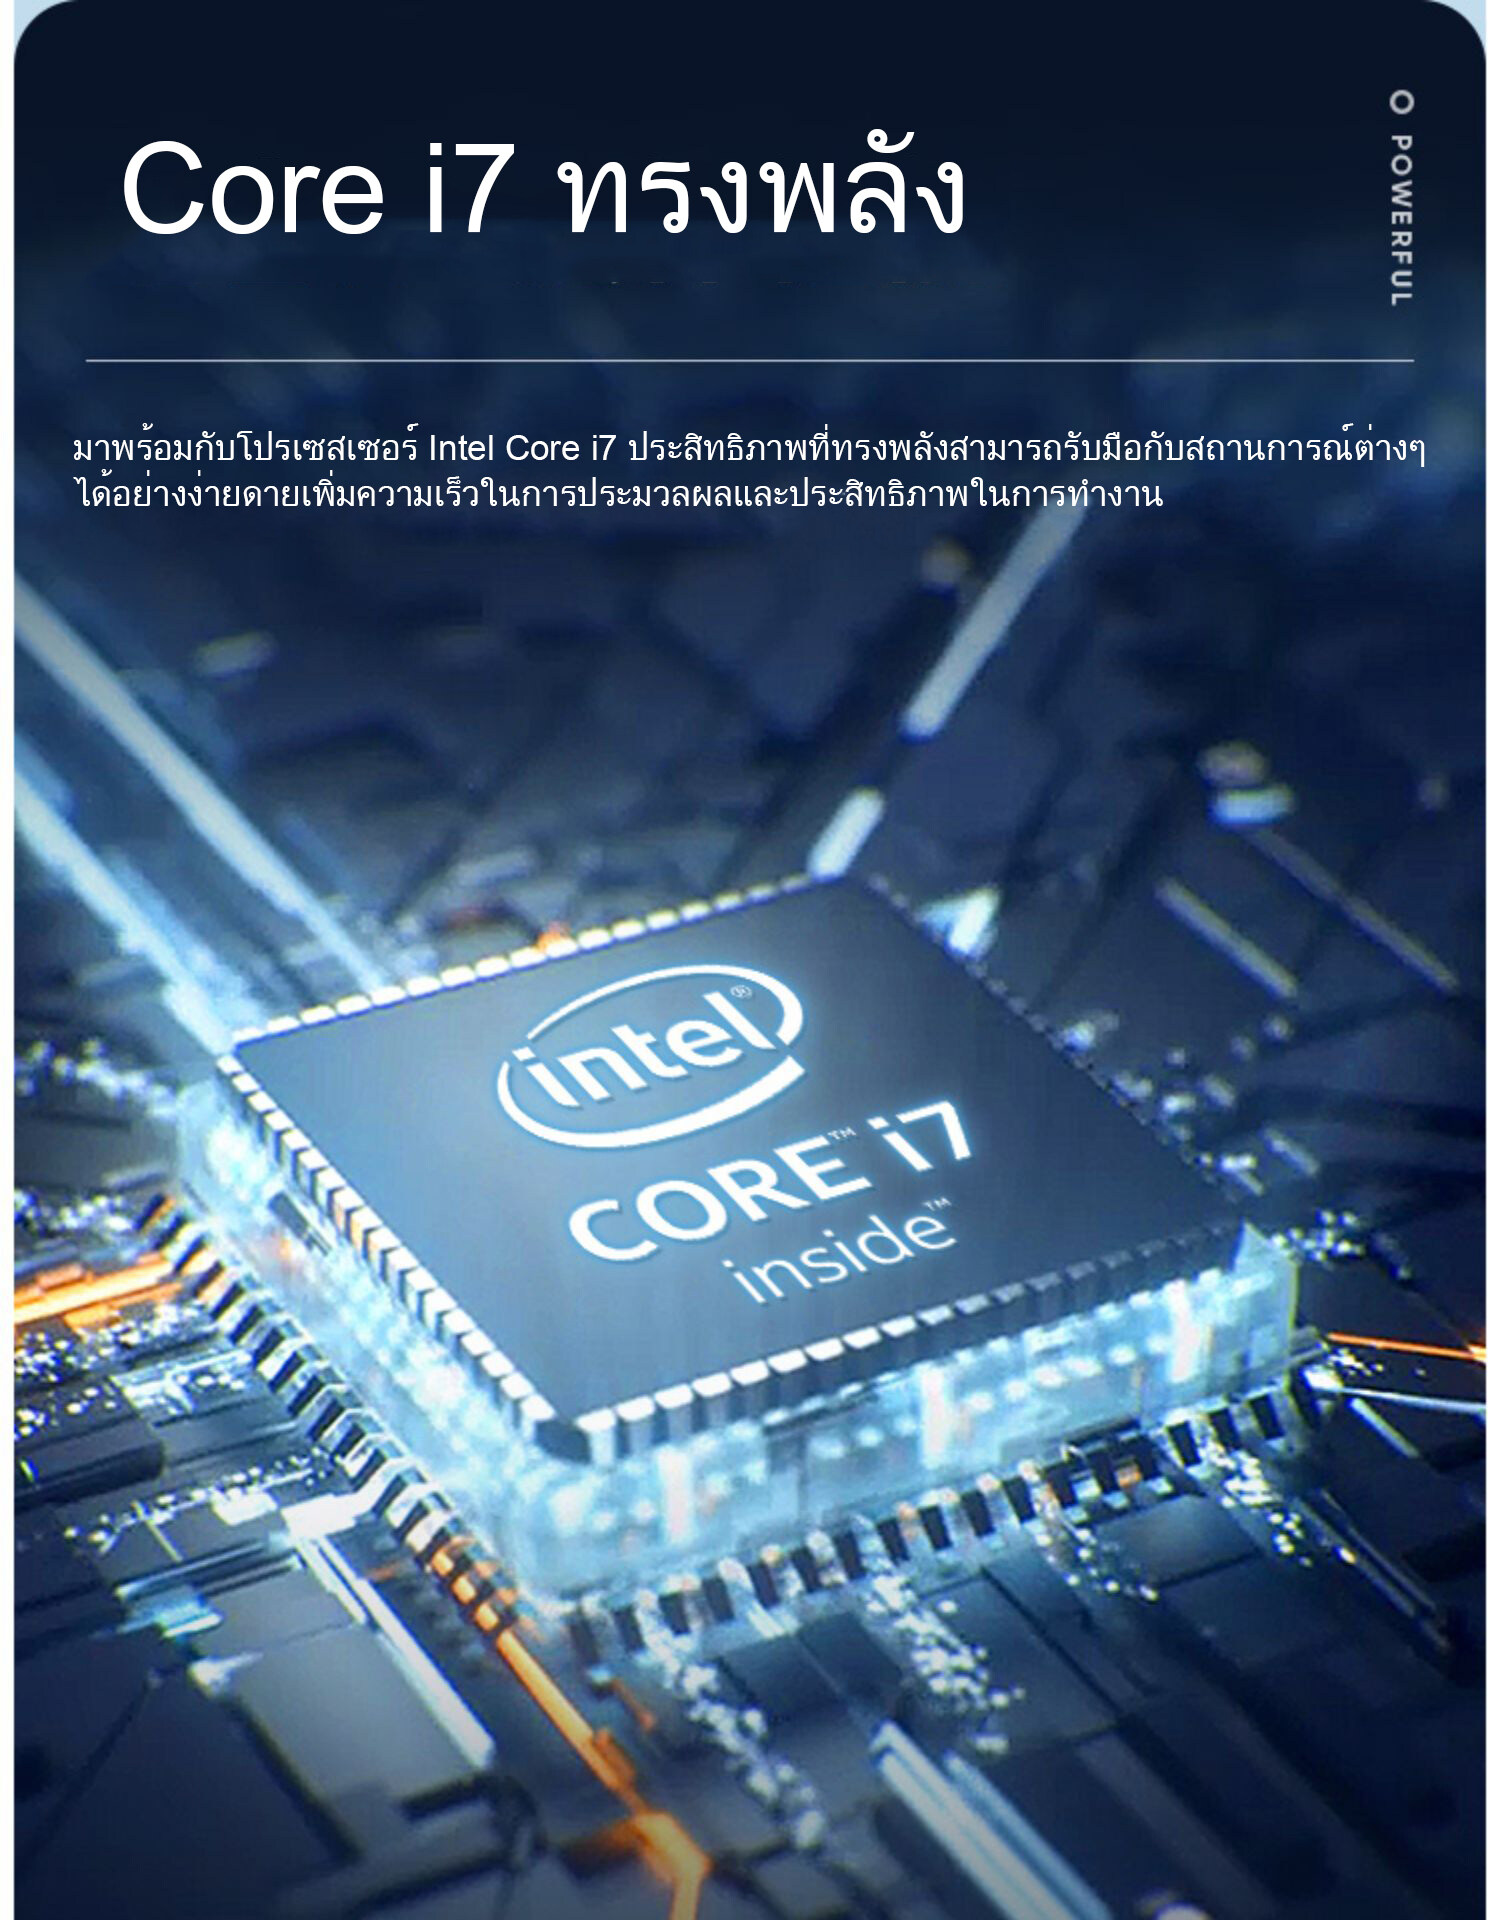 ข้อมูลเกี่ยวกับ Intel Core i7 ออล - อิน - วัน PC ขนาด 24 นิ้ว คอมพิวเตอร์ เดสก์ท็อปพีซี แรม 8G 256G SSD เมาส์ไร้สายและคีย์บอร์ดไร้สายฟรี computer all in one ส่งเมาส์ไร้สาย ASUS